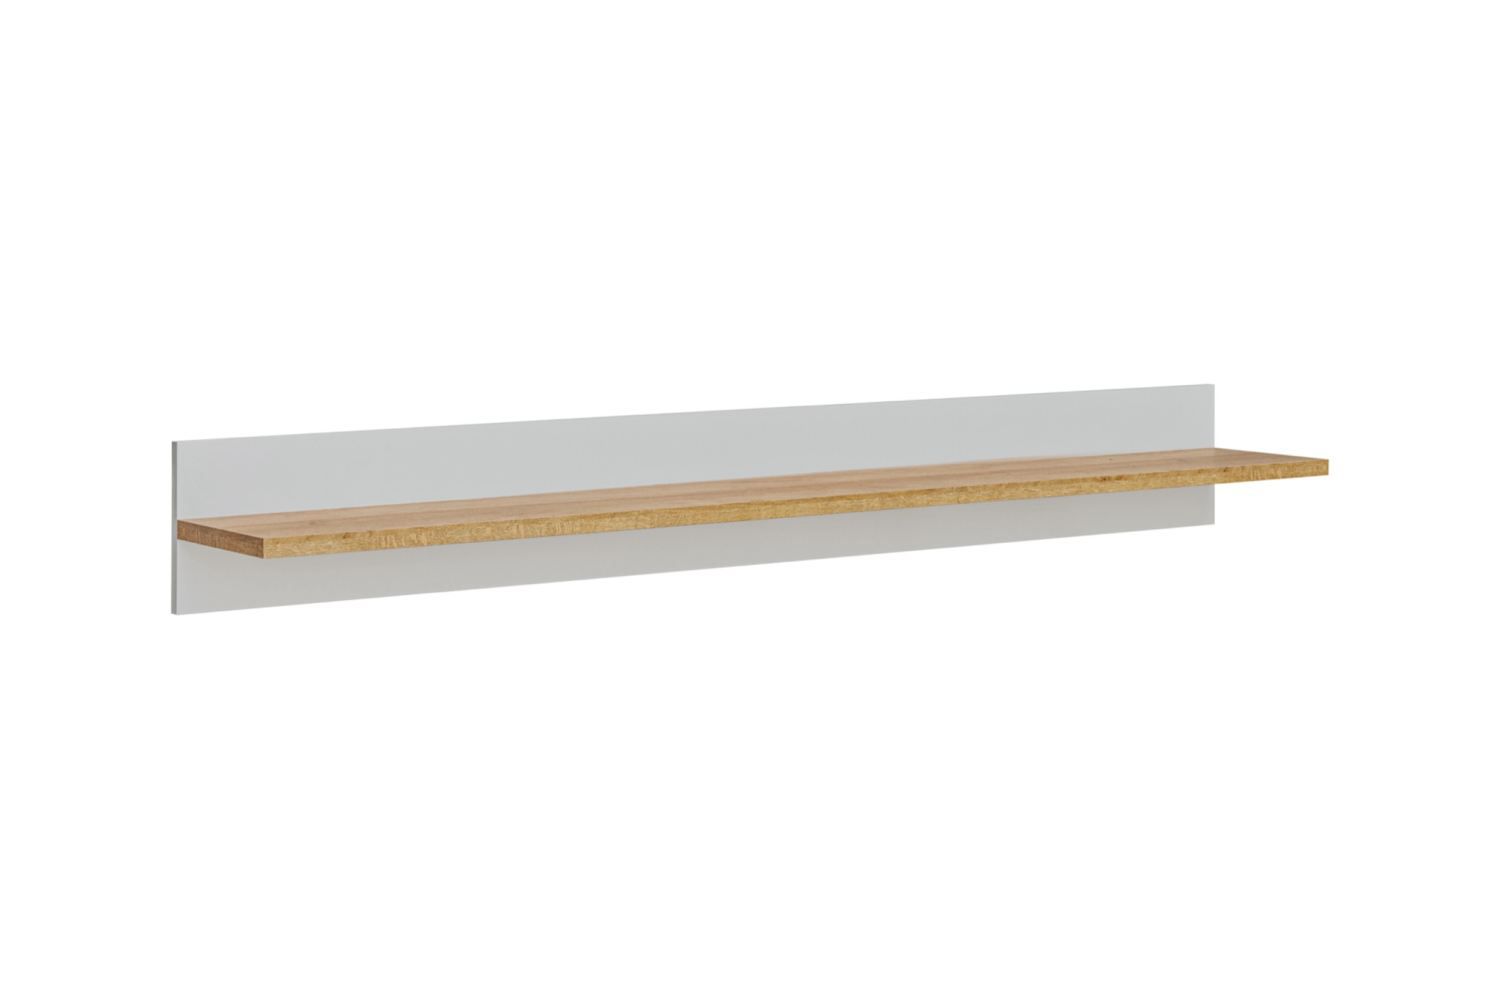 Wandplank Austgulen 05, kleur: eiken riviera / lichtgrijs - Afmetingen: 20 x 160 x 25 cm (H x B x D)